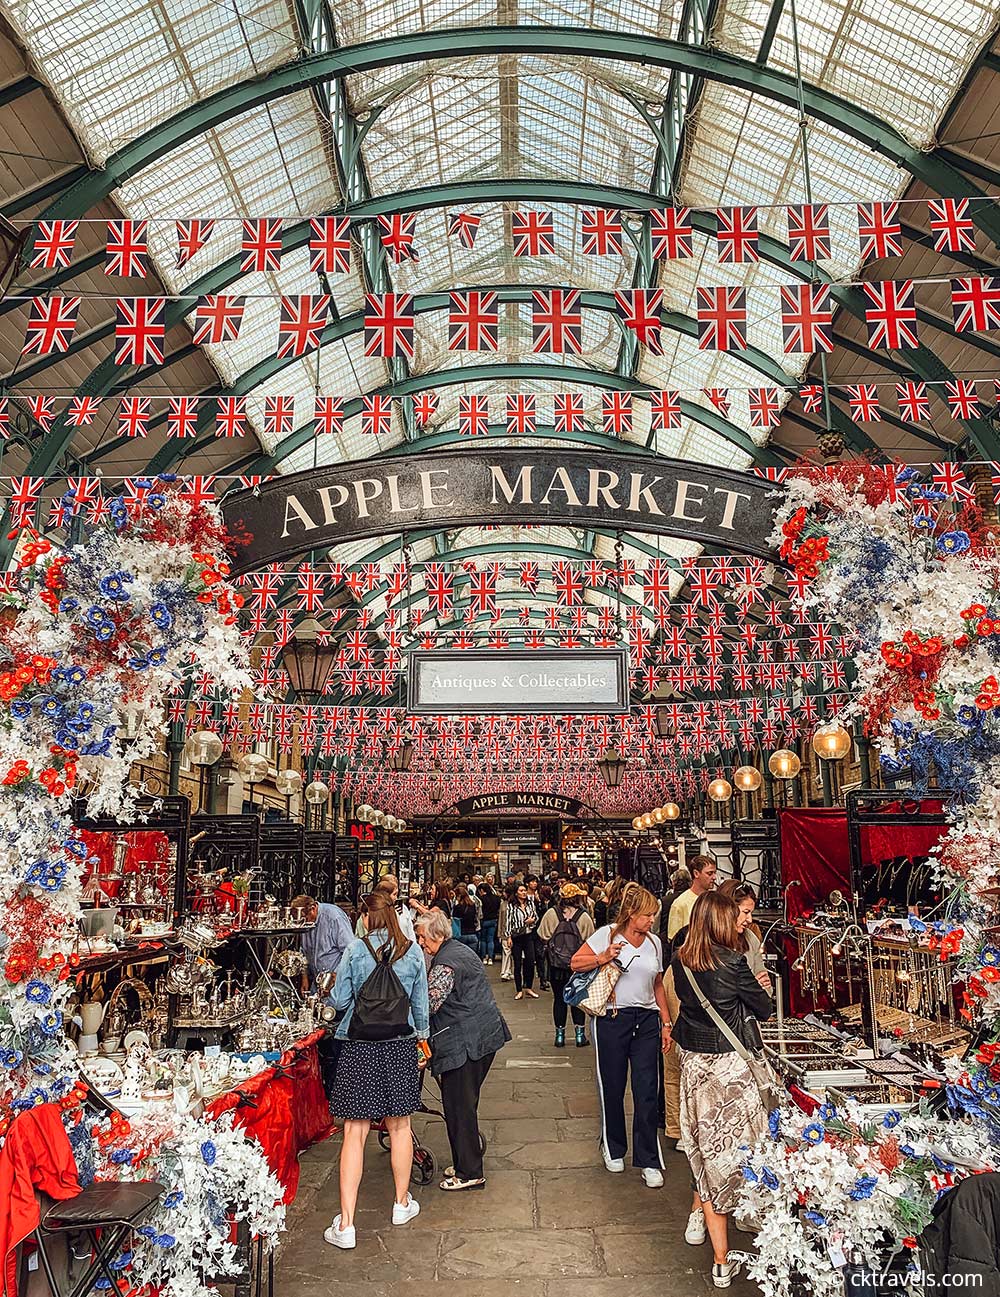 Apple Market Covent Garden London shopping